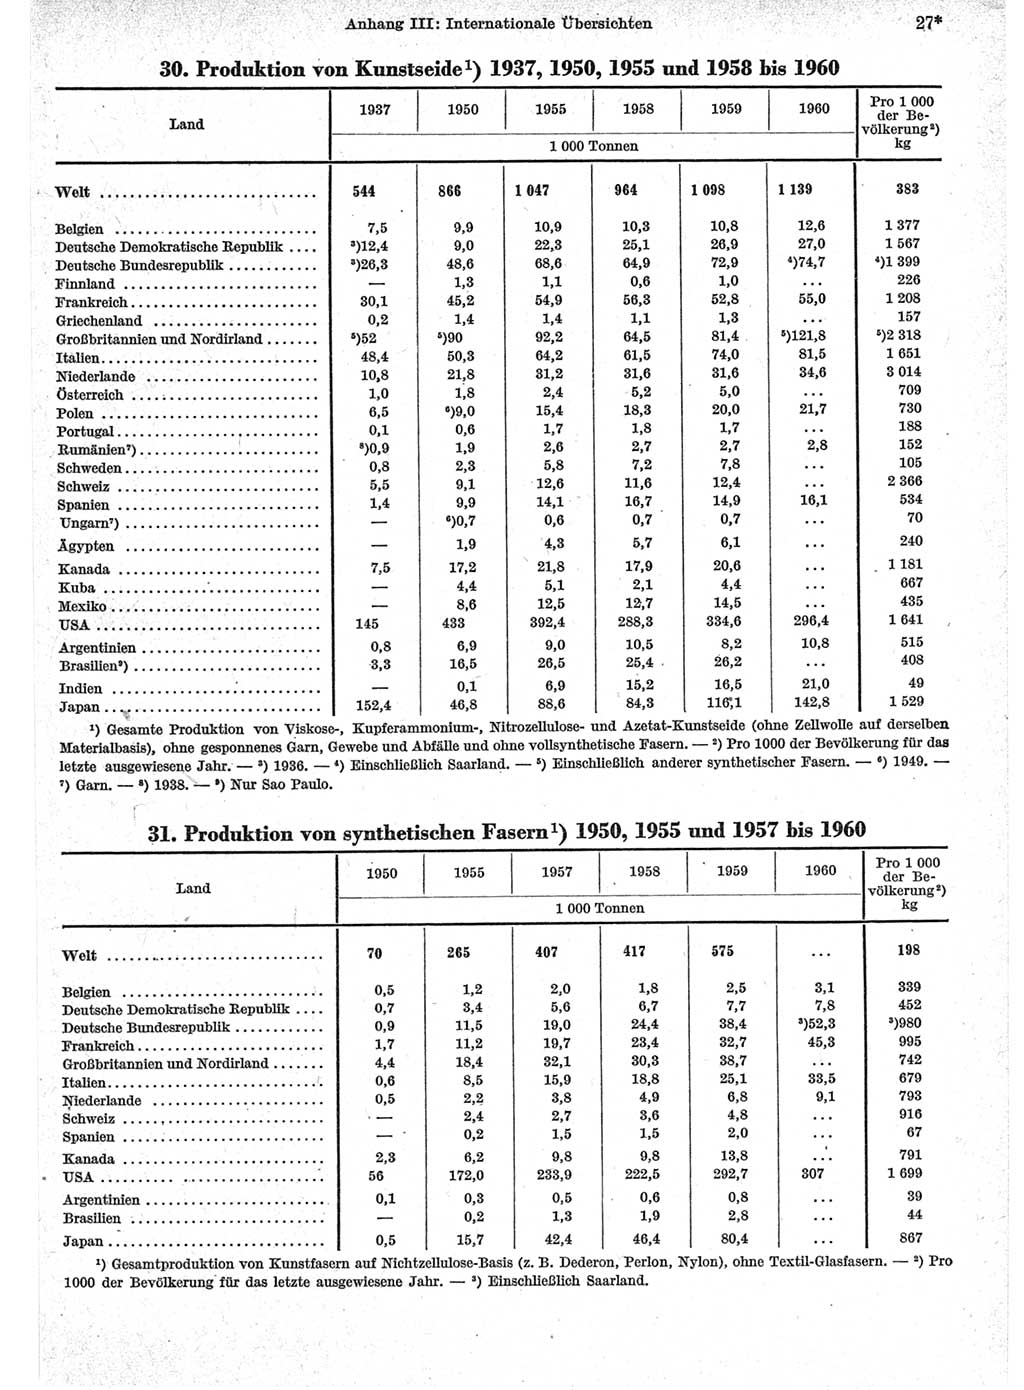 Statistisches Jahrbuch der Deutschen Demokratischen Republik (DDR) 1962, Seite 27 (Stat. Jb. DDR 1962, S. 27)